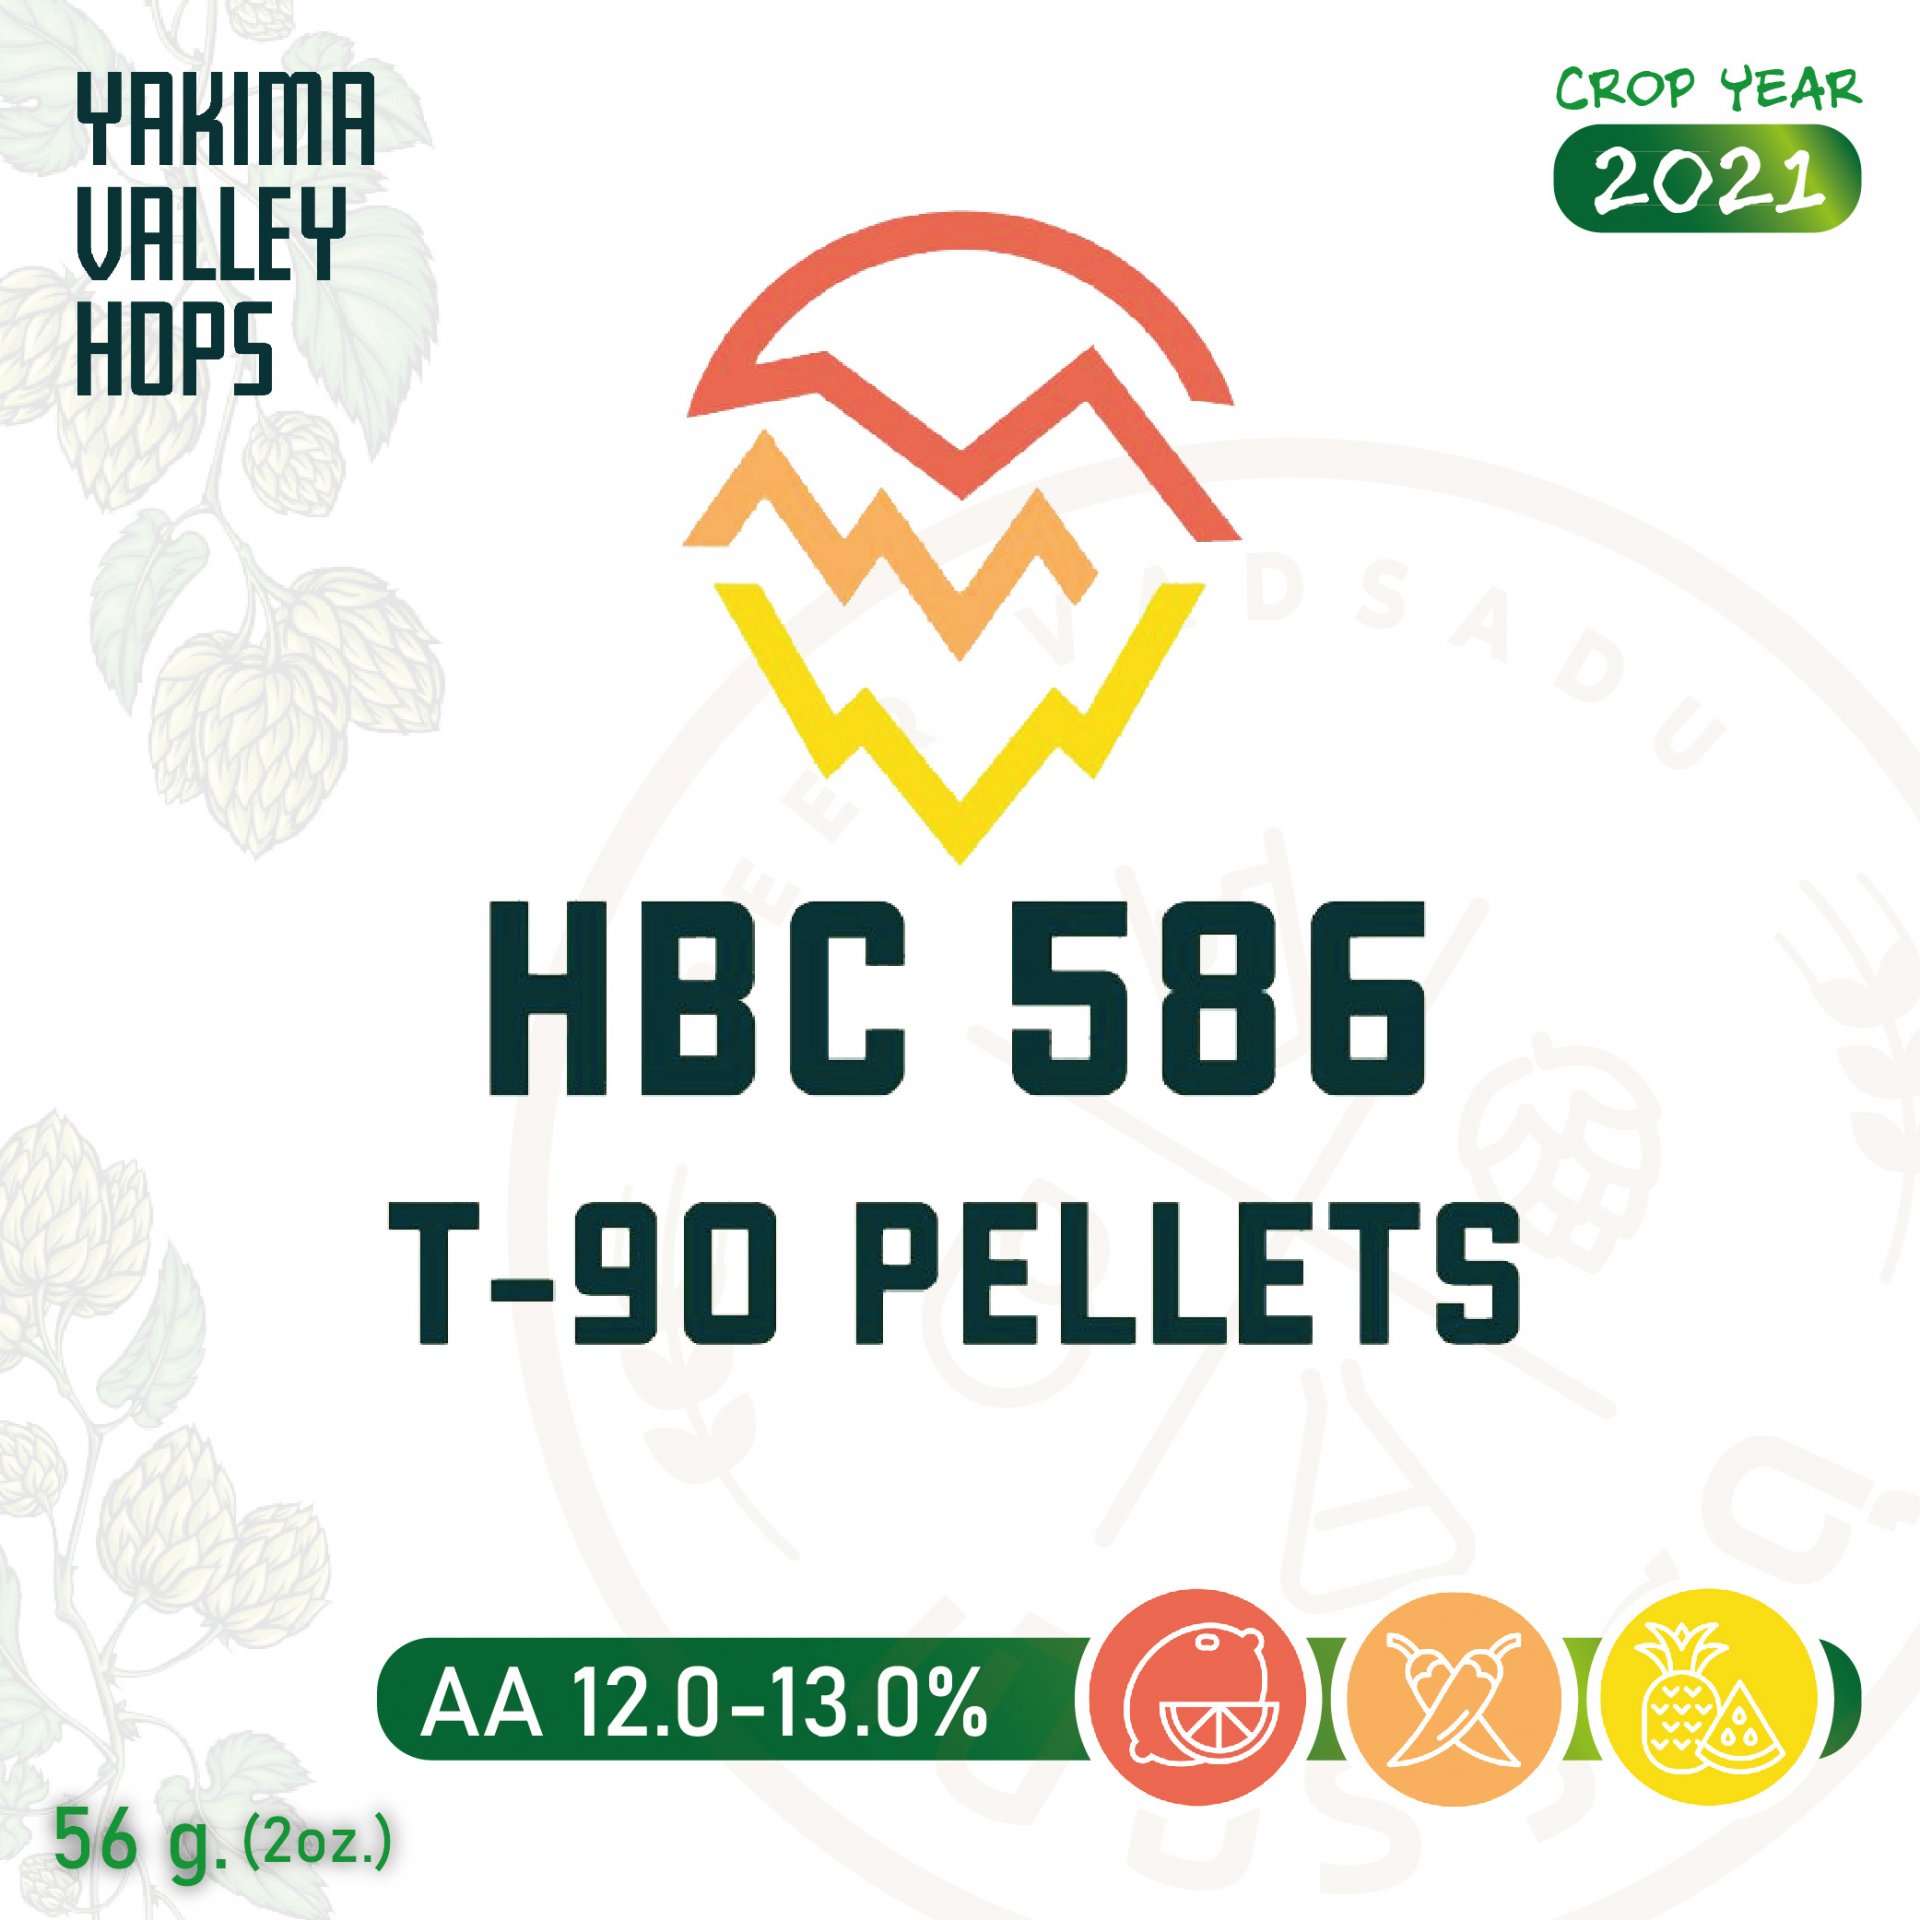 ฮอปทำเบียร์ HBC 586 2 oz